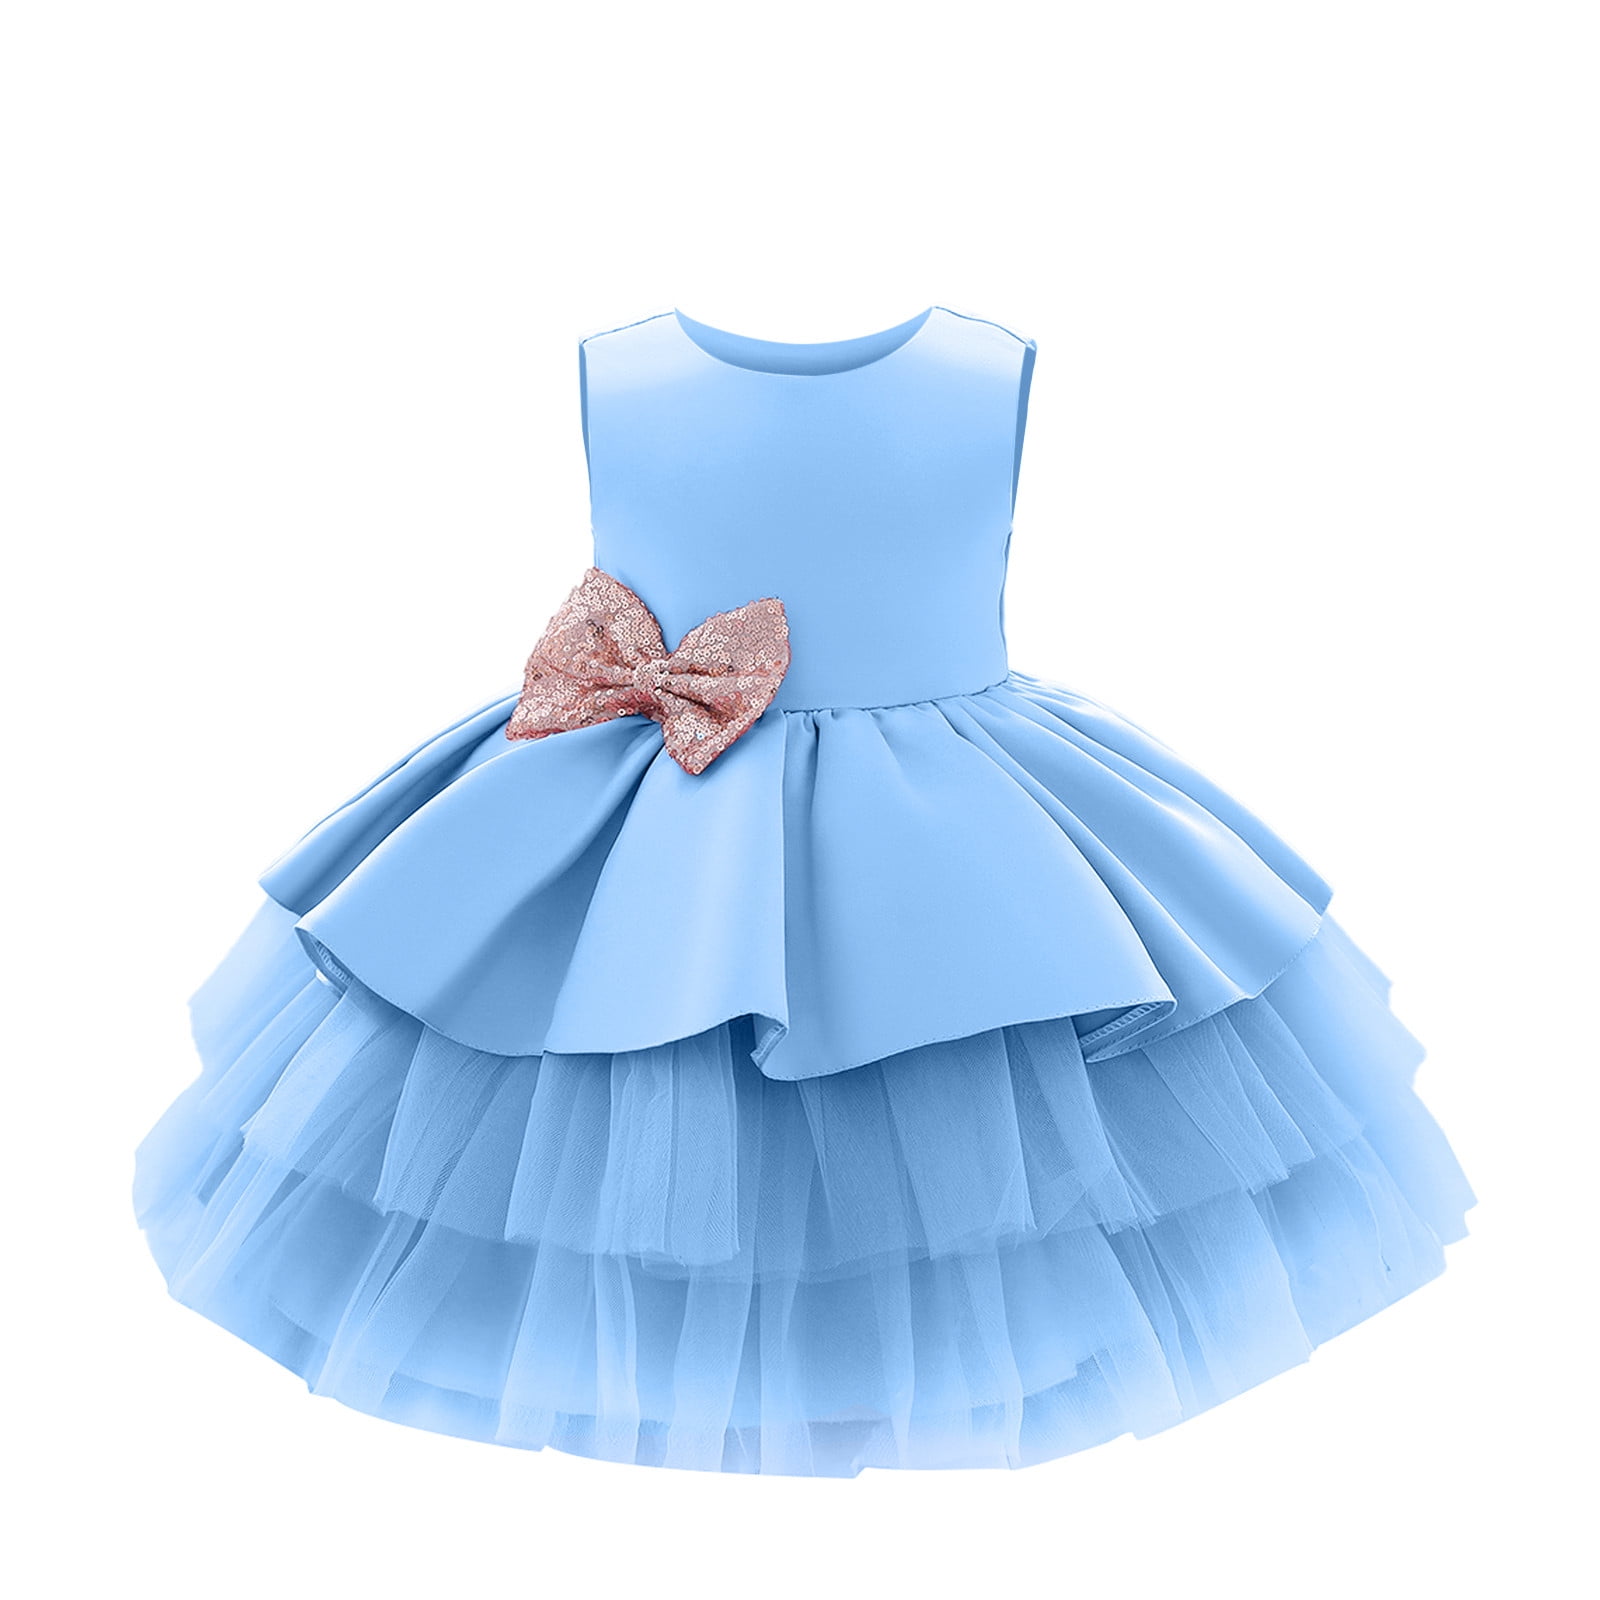 Kids Dress For Girls: Baby Girls Dresses Online | Westside